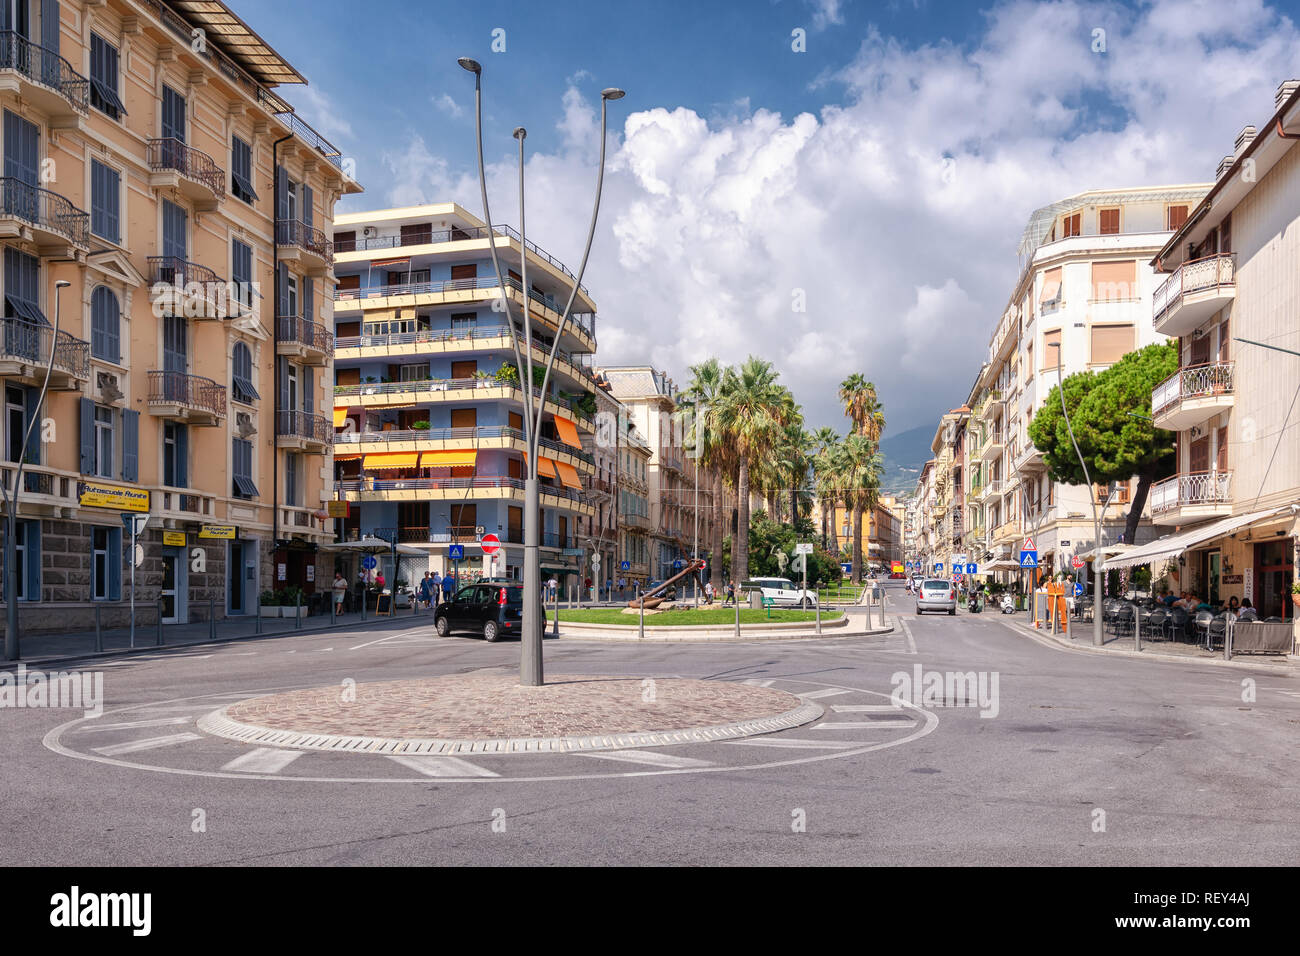 San Remo, Italia, Settembre 18, 2018: impressione della strada Corso Augusto Mombello nel centro della città italiana di San Remo Foto Stock